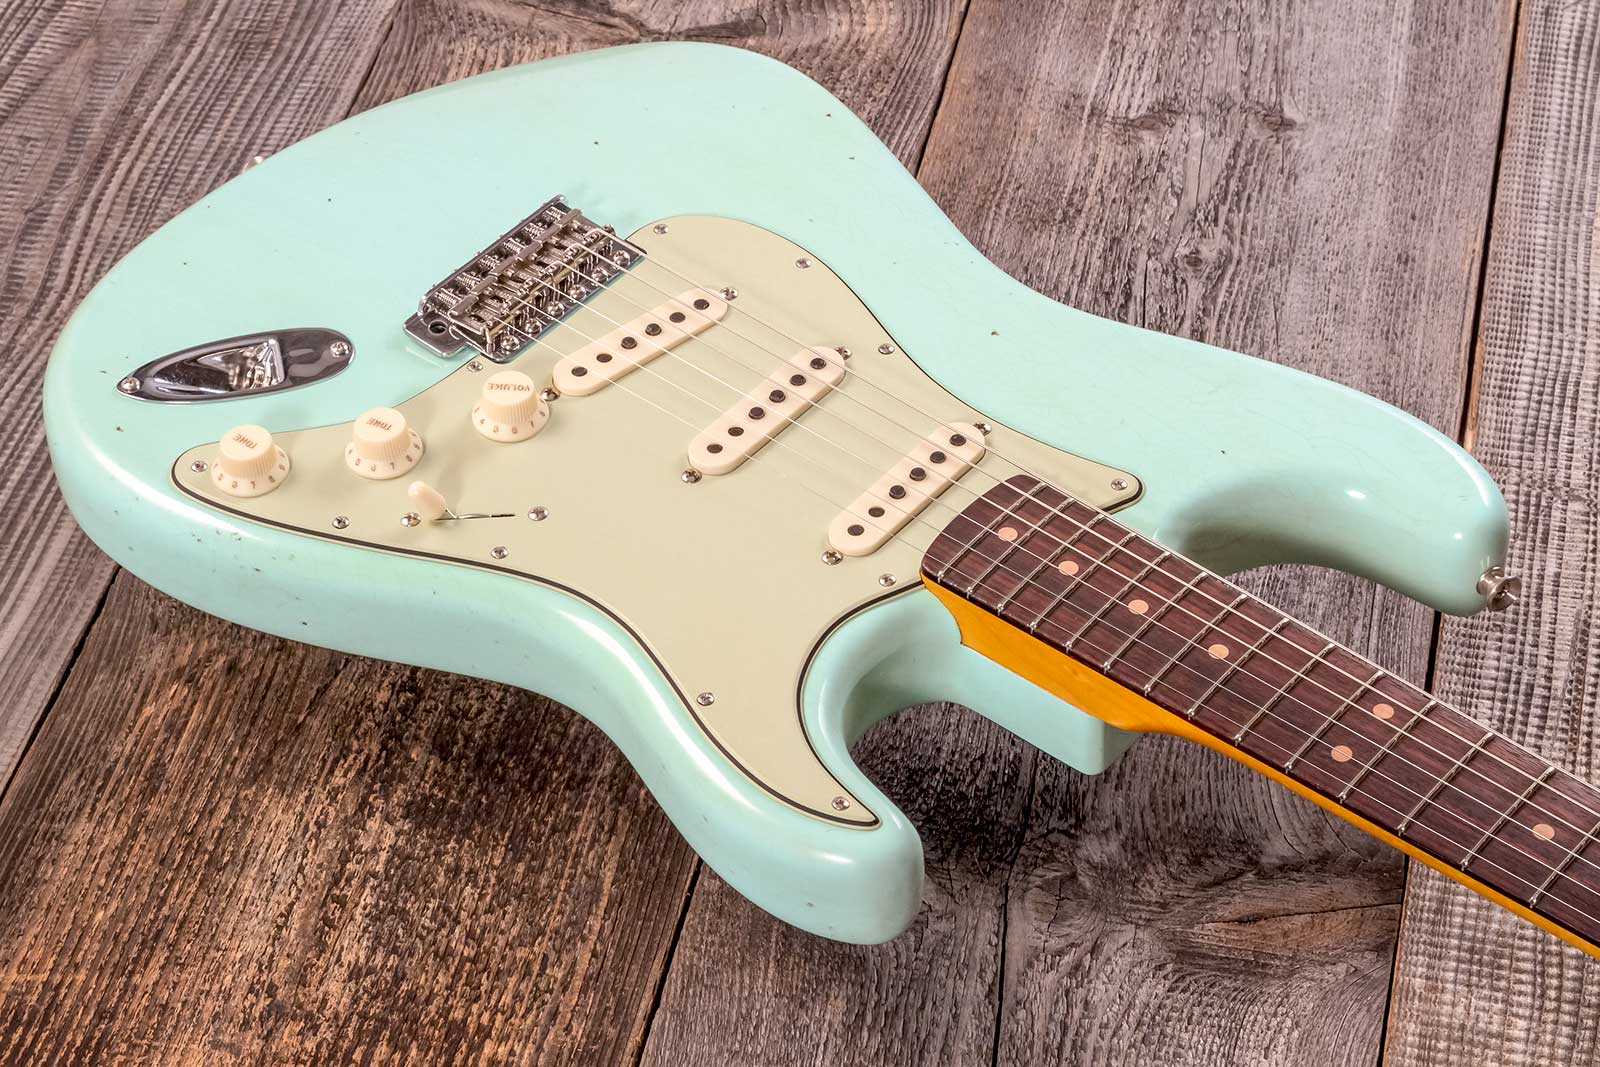 Fender Custom Shop Strat 1964 3s Trem Rw #cz579859 - Journey Man Relic Aged Surf Green - Elektrische gitaar in Str-vorm - Variation 3